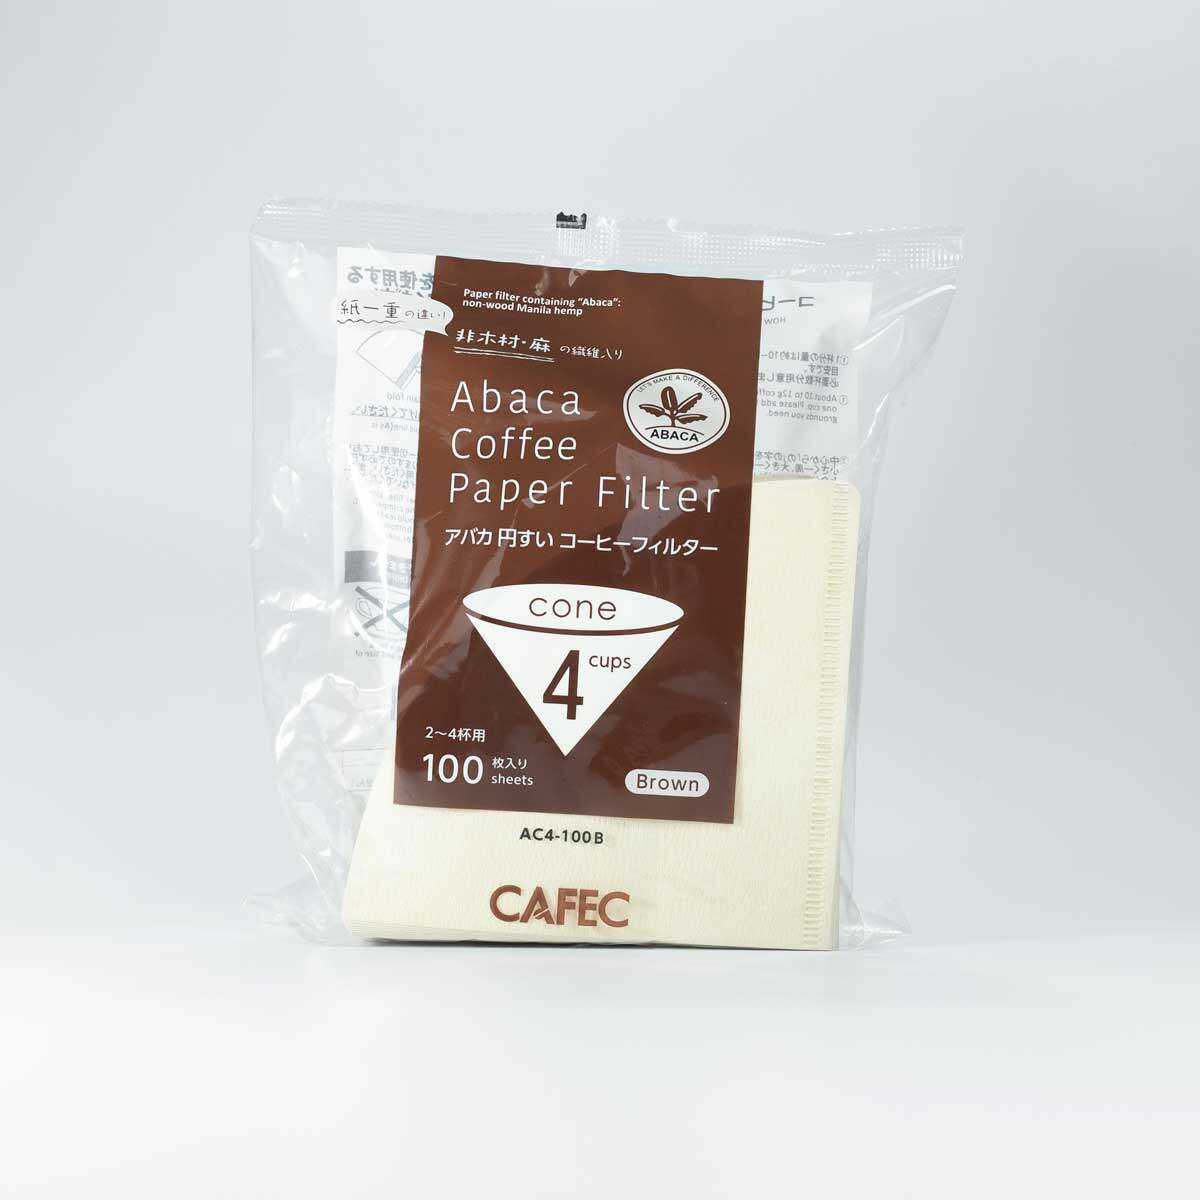 CAFEC Abaca Brown Paper Filter 4 Cups [ Cone Shape ] กระดาษกรองกาแฟ CAFEC สีน้ำตาลผสมเส้นใย Abaca ขนาด 4 แก้ว ทรงกรวย